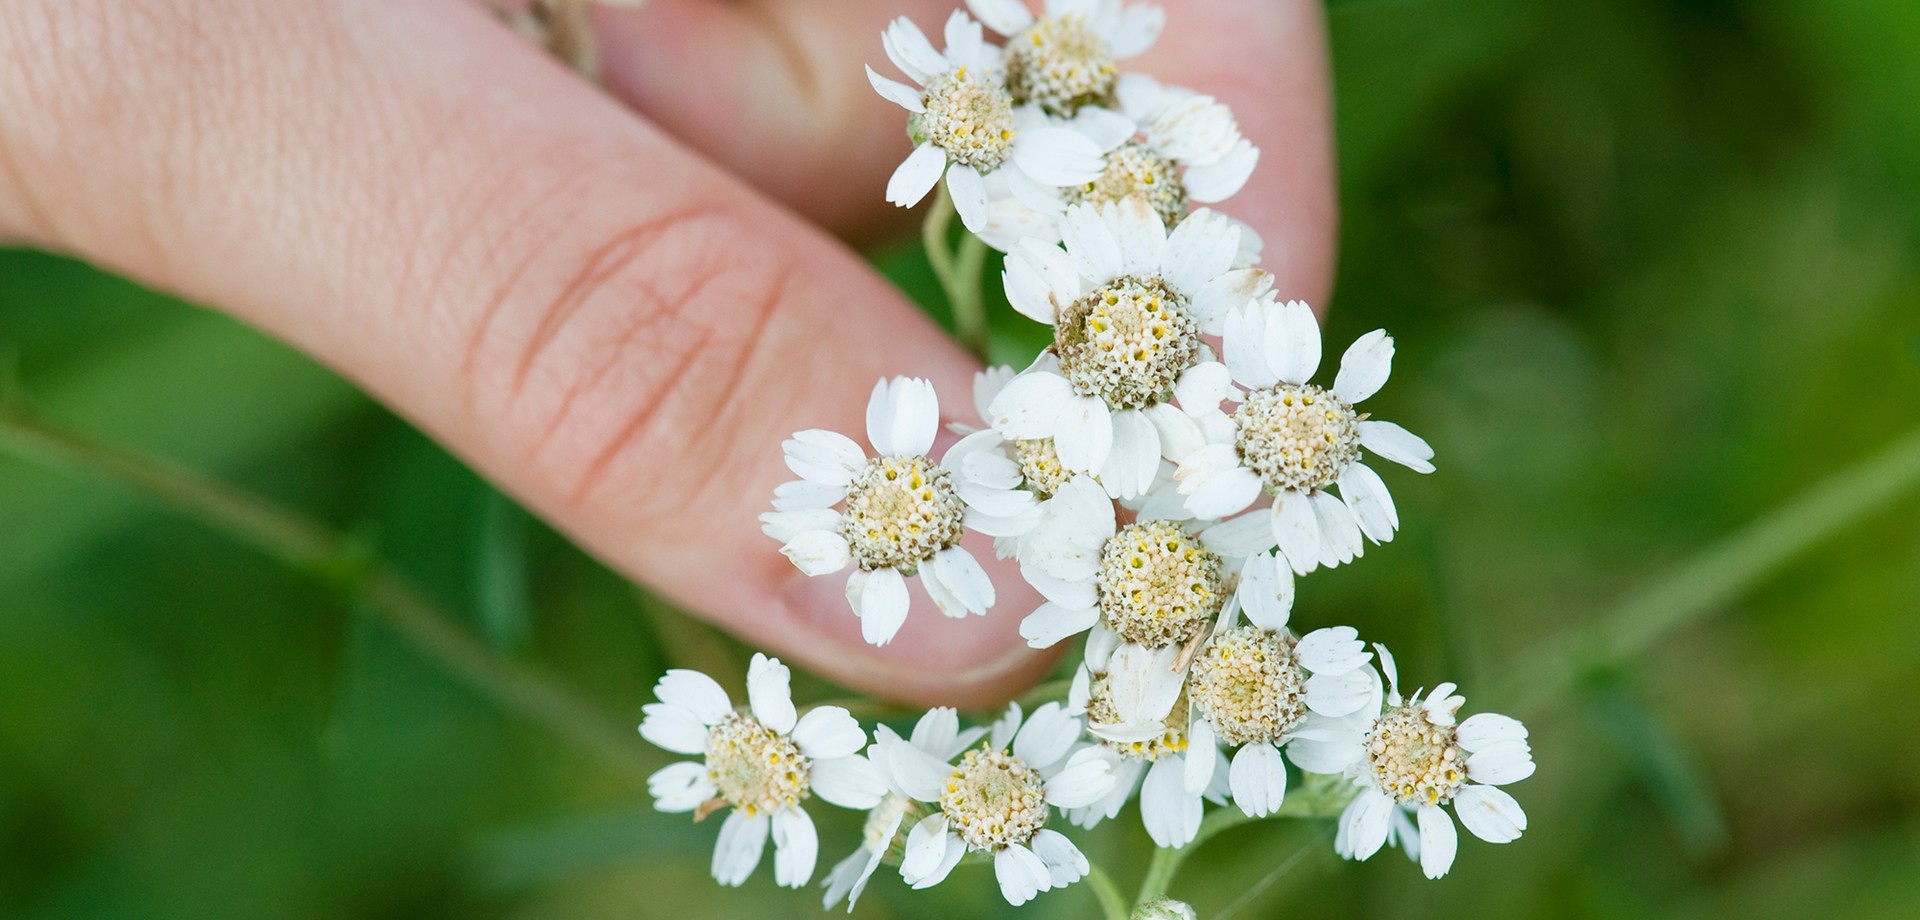 Blütenpflanze (Sumpfschafgarbe) in einer Hand. Foto: LWL/Oblonczyk